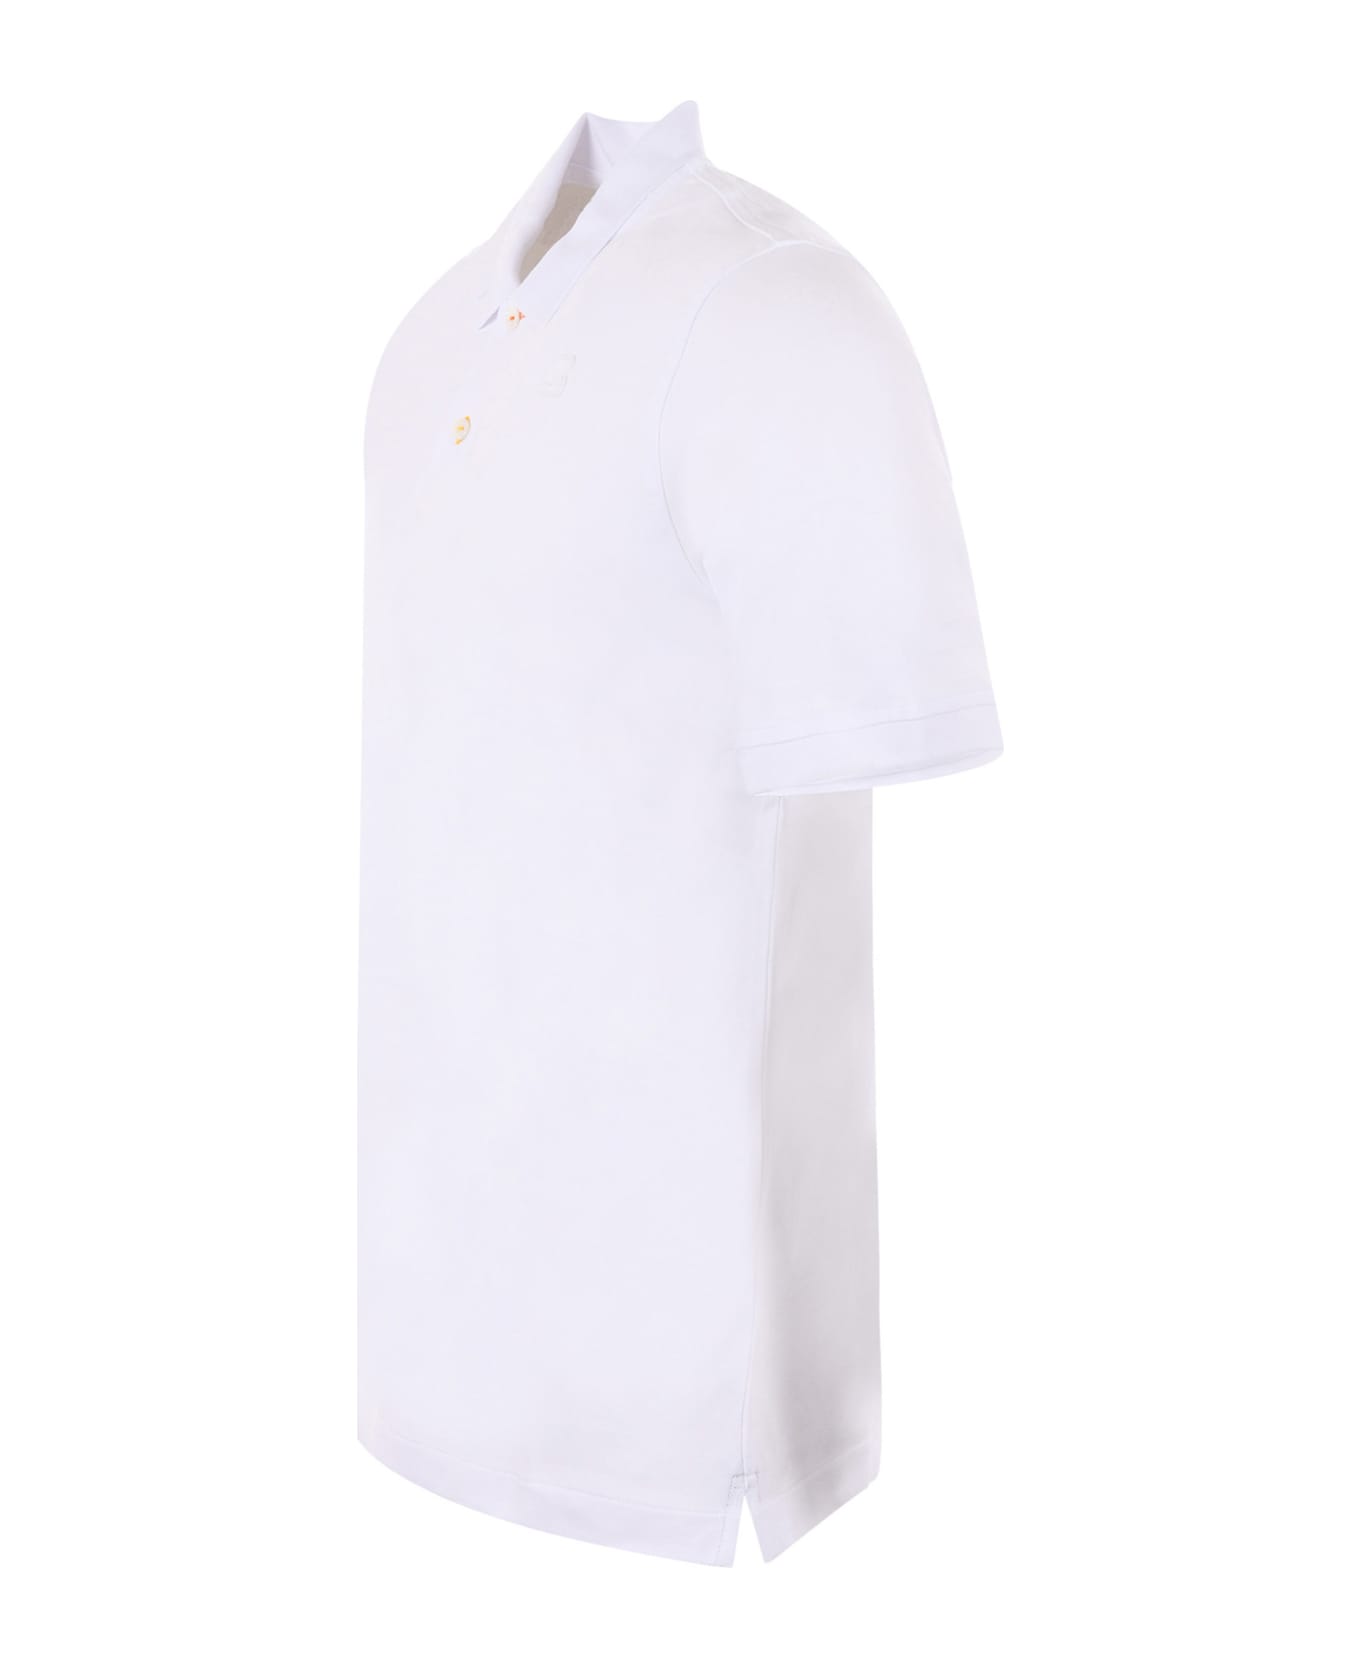 K-Way Polo Shirt - Bianco ポロシャツ